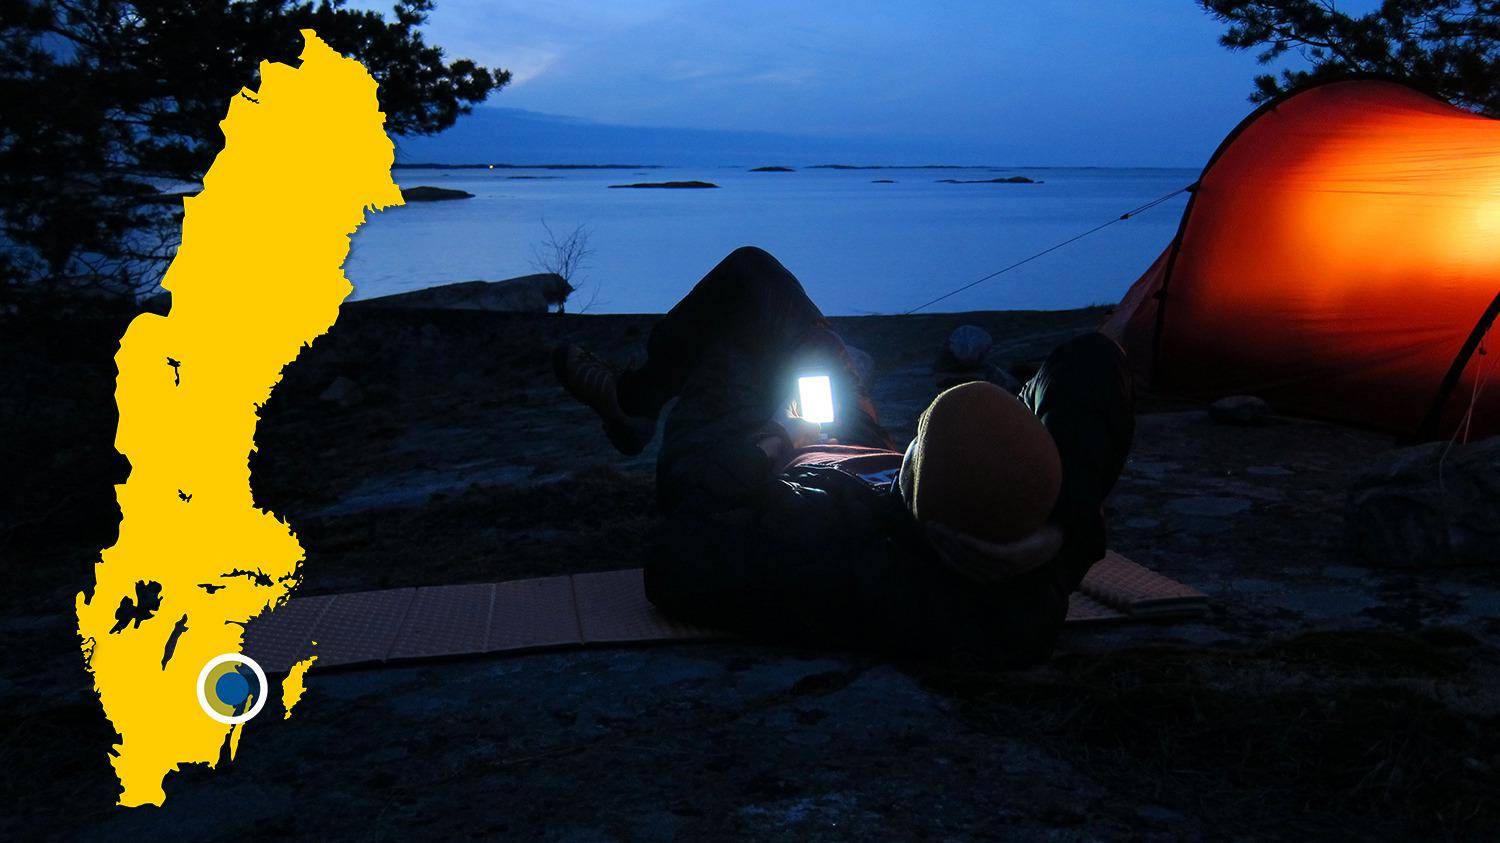 Une tente est plantée sur une plage près de l'eau. Il fait nuit et une personne est allongée à côté de la tente et regarde son téléphone.